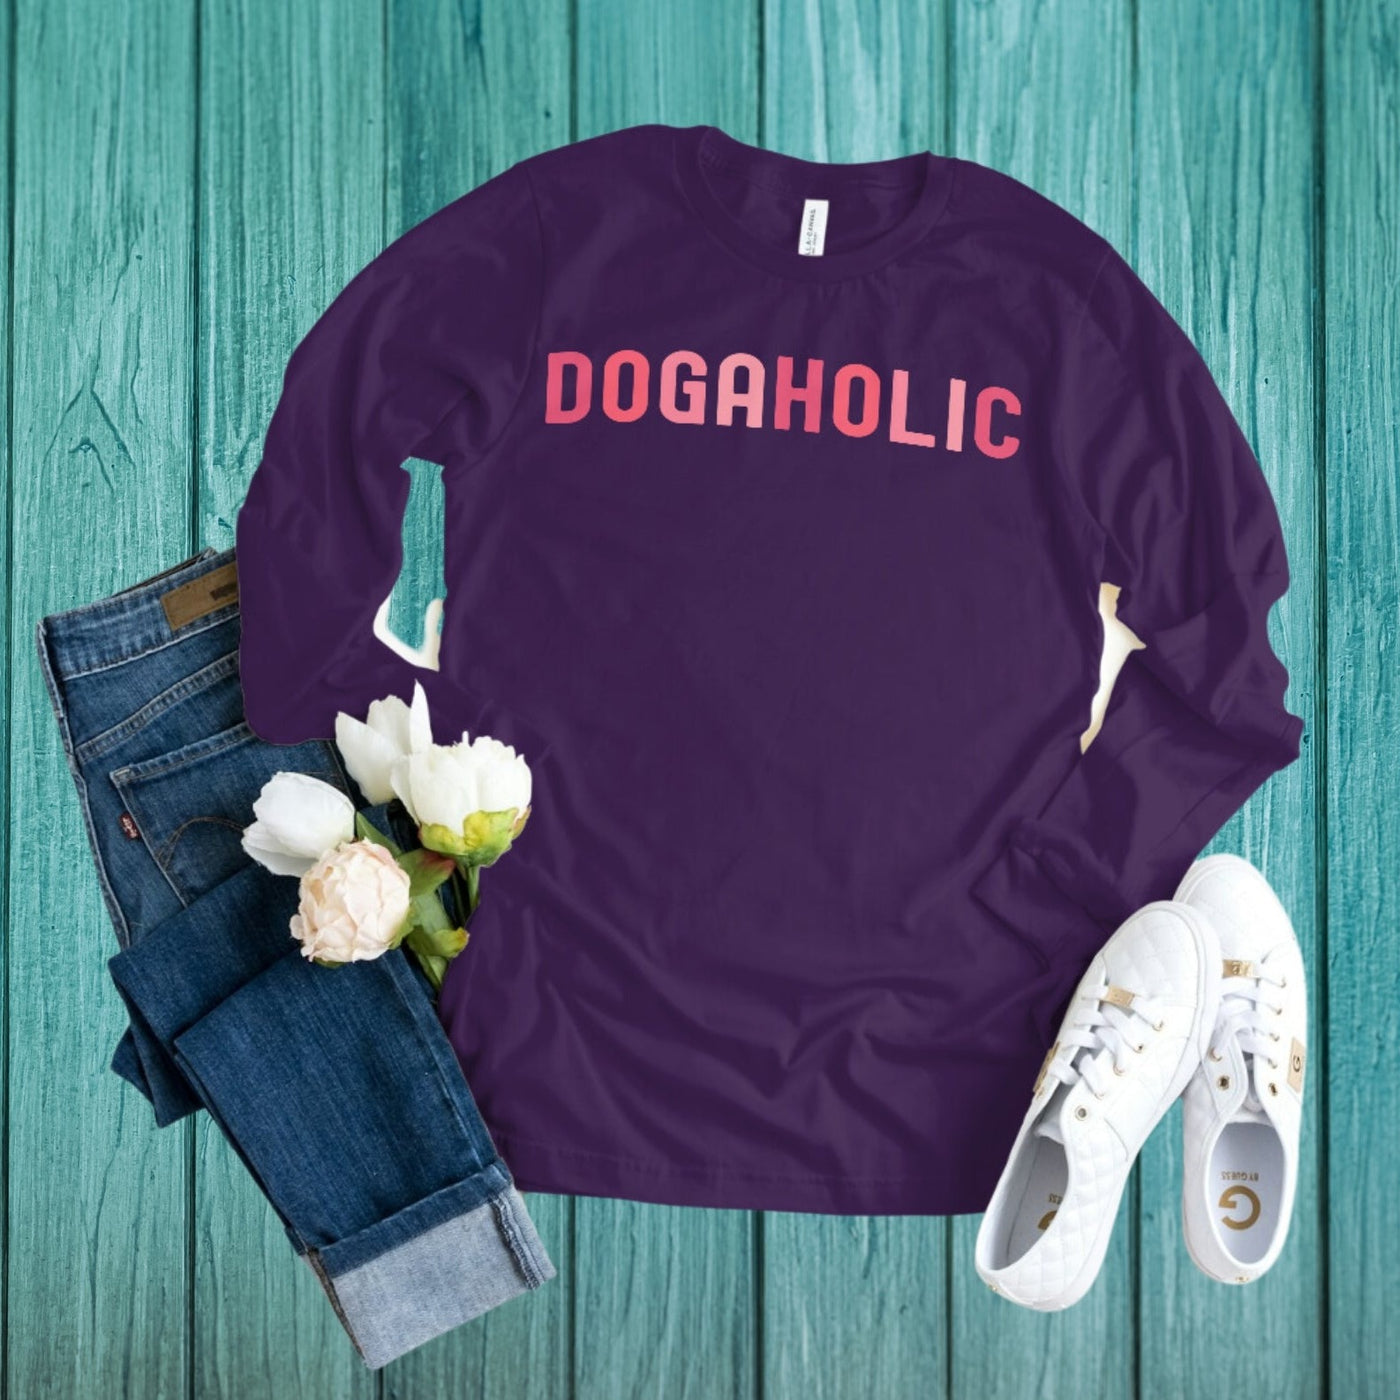 Dogaholic Long Sleeve